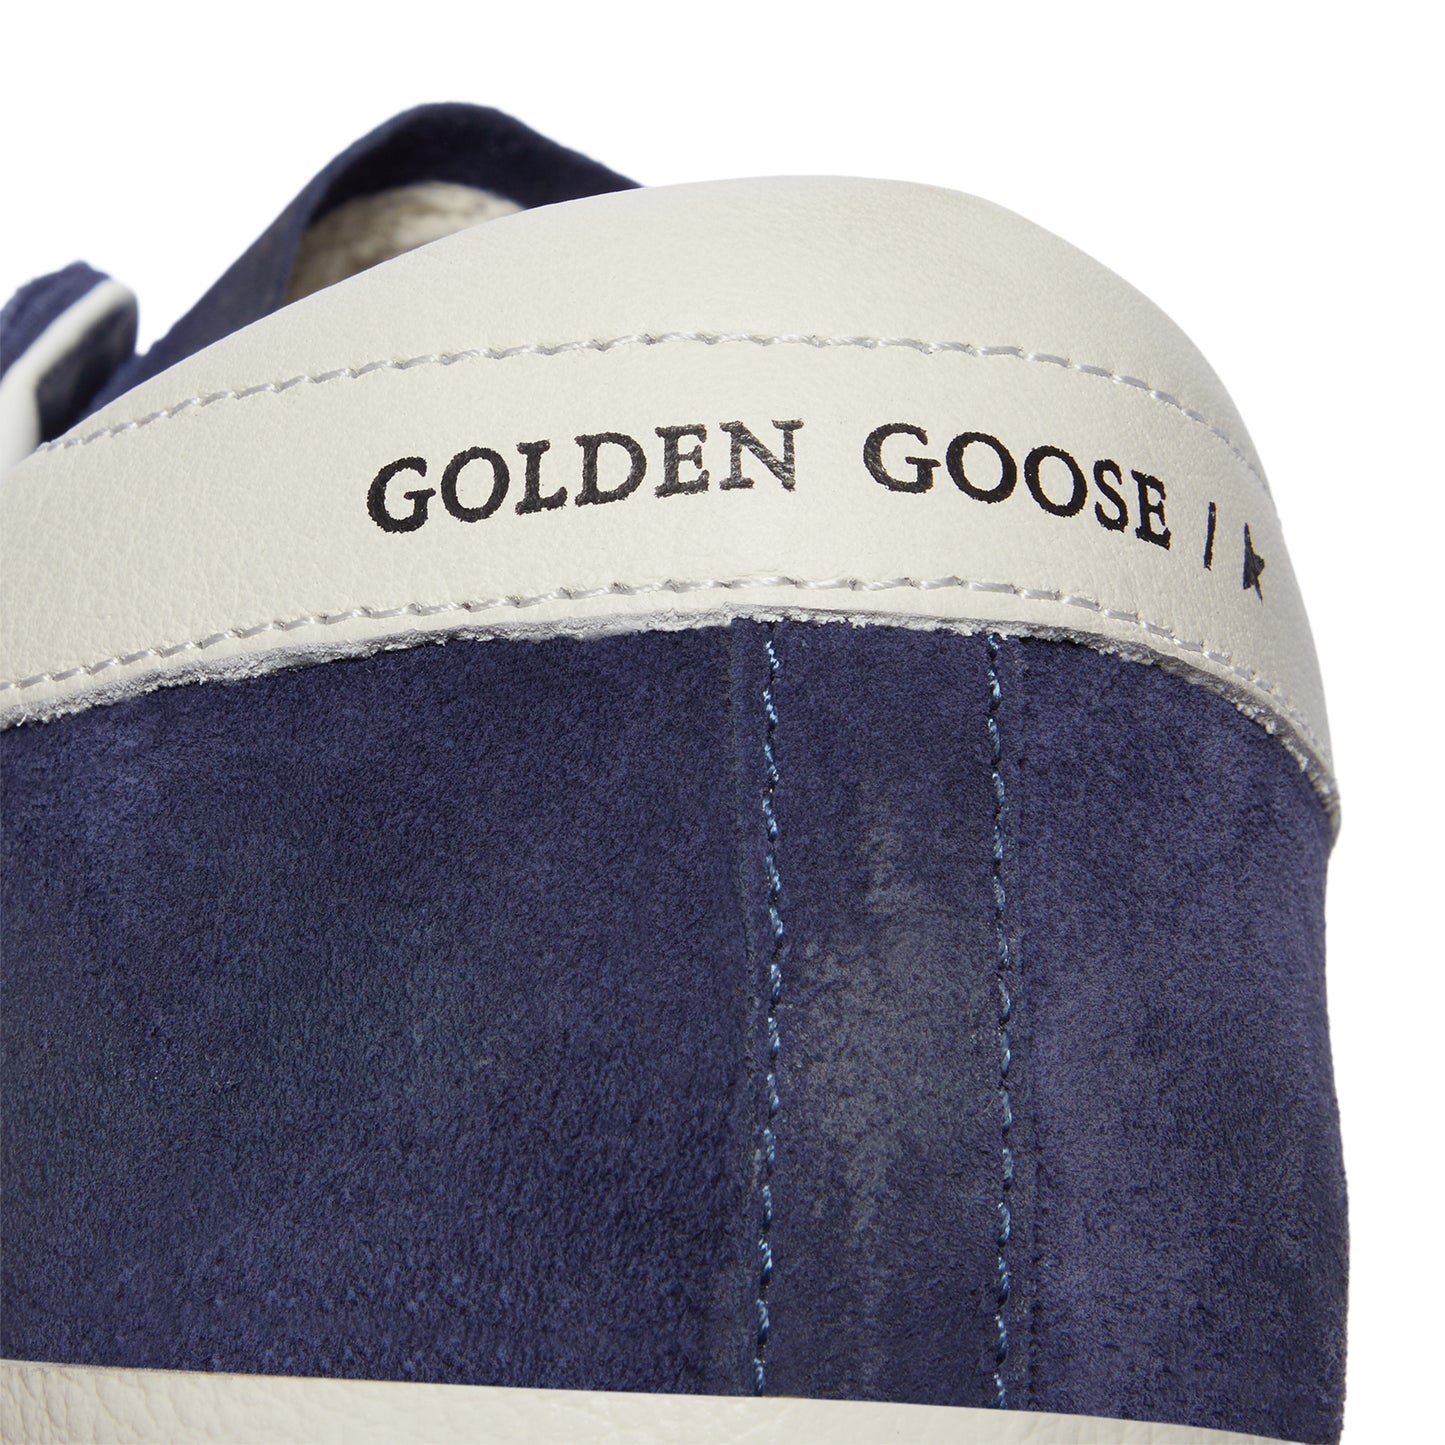 Golden Goose Super Star (Blue/White)